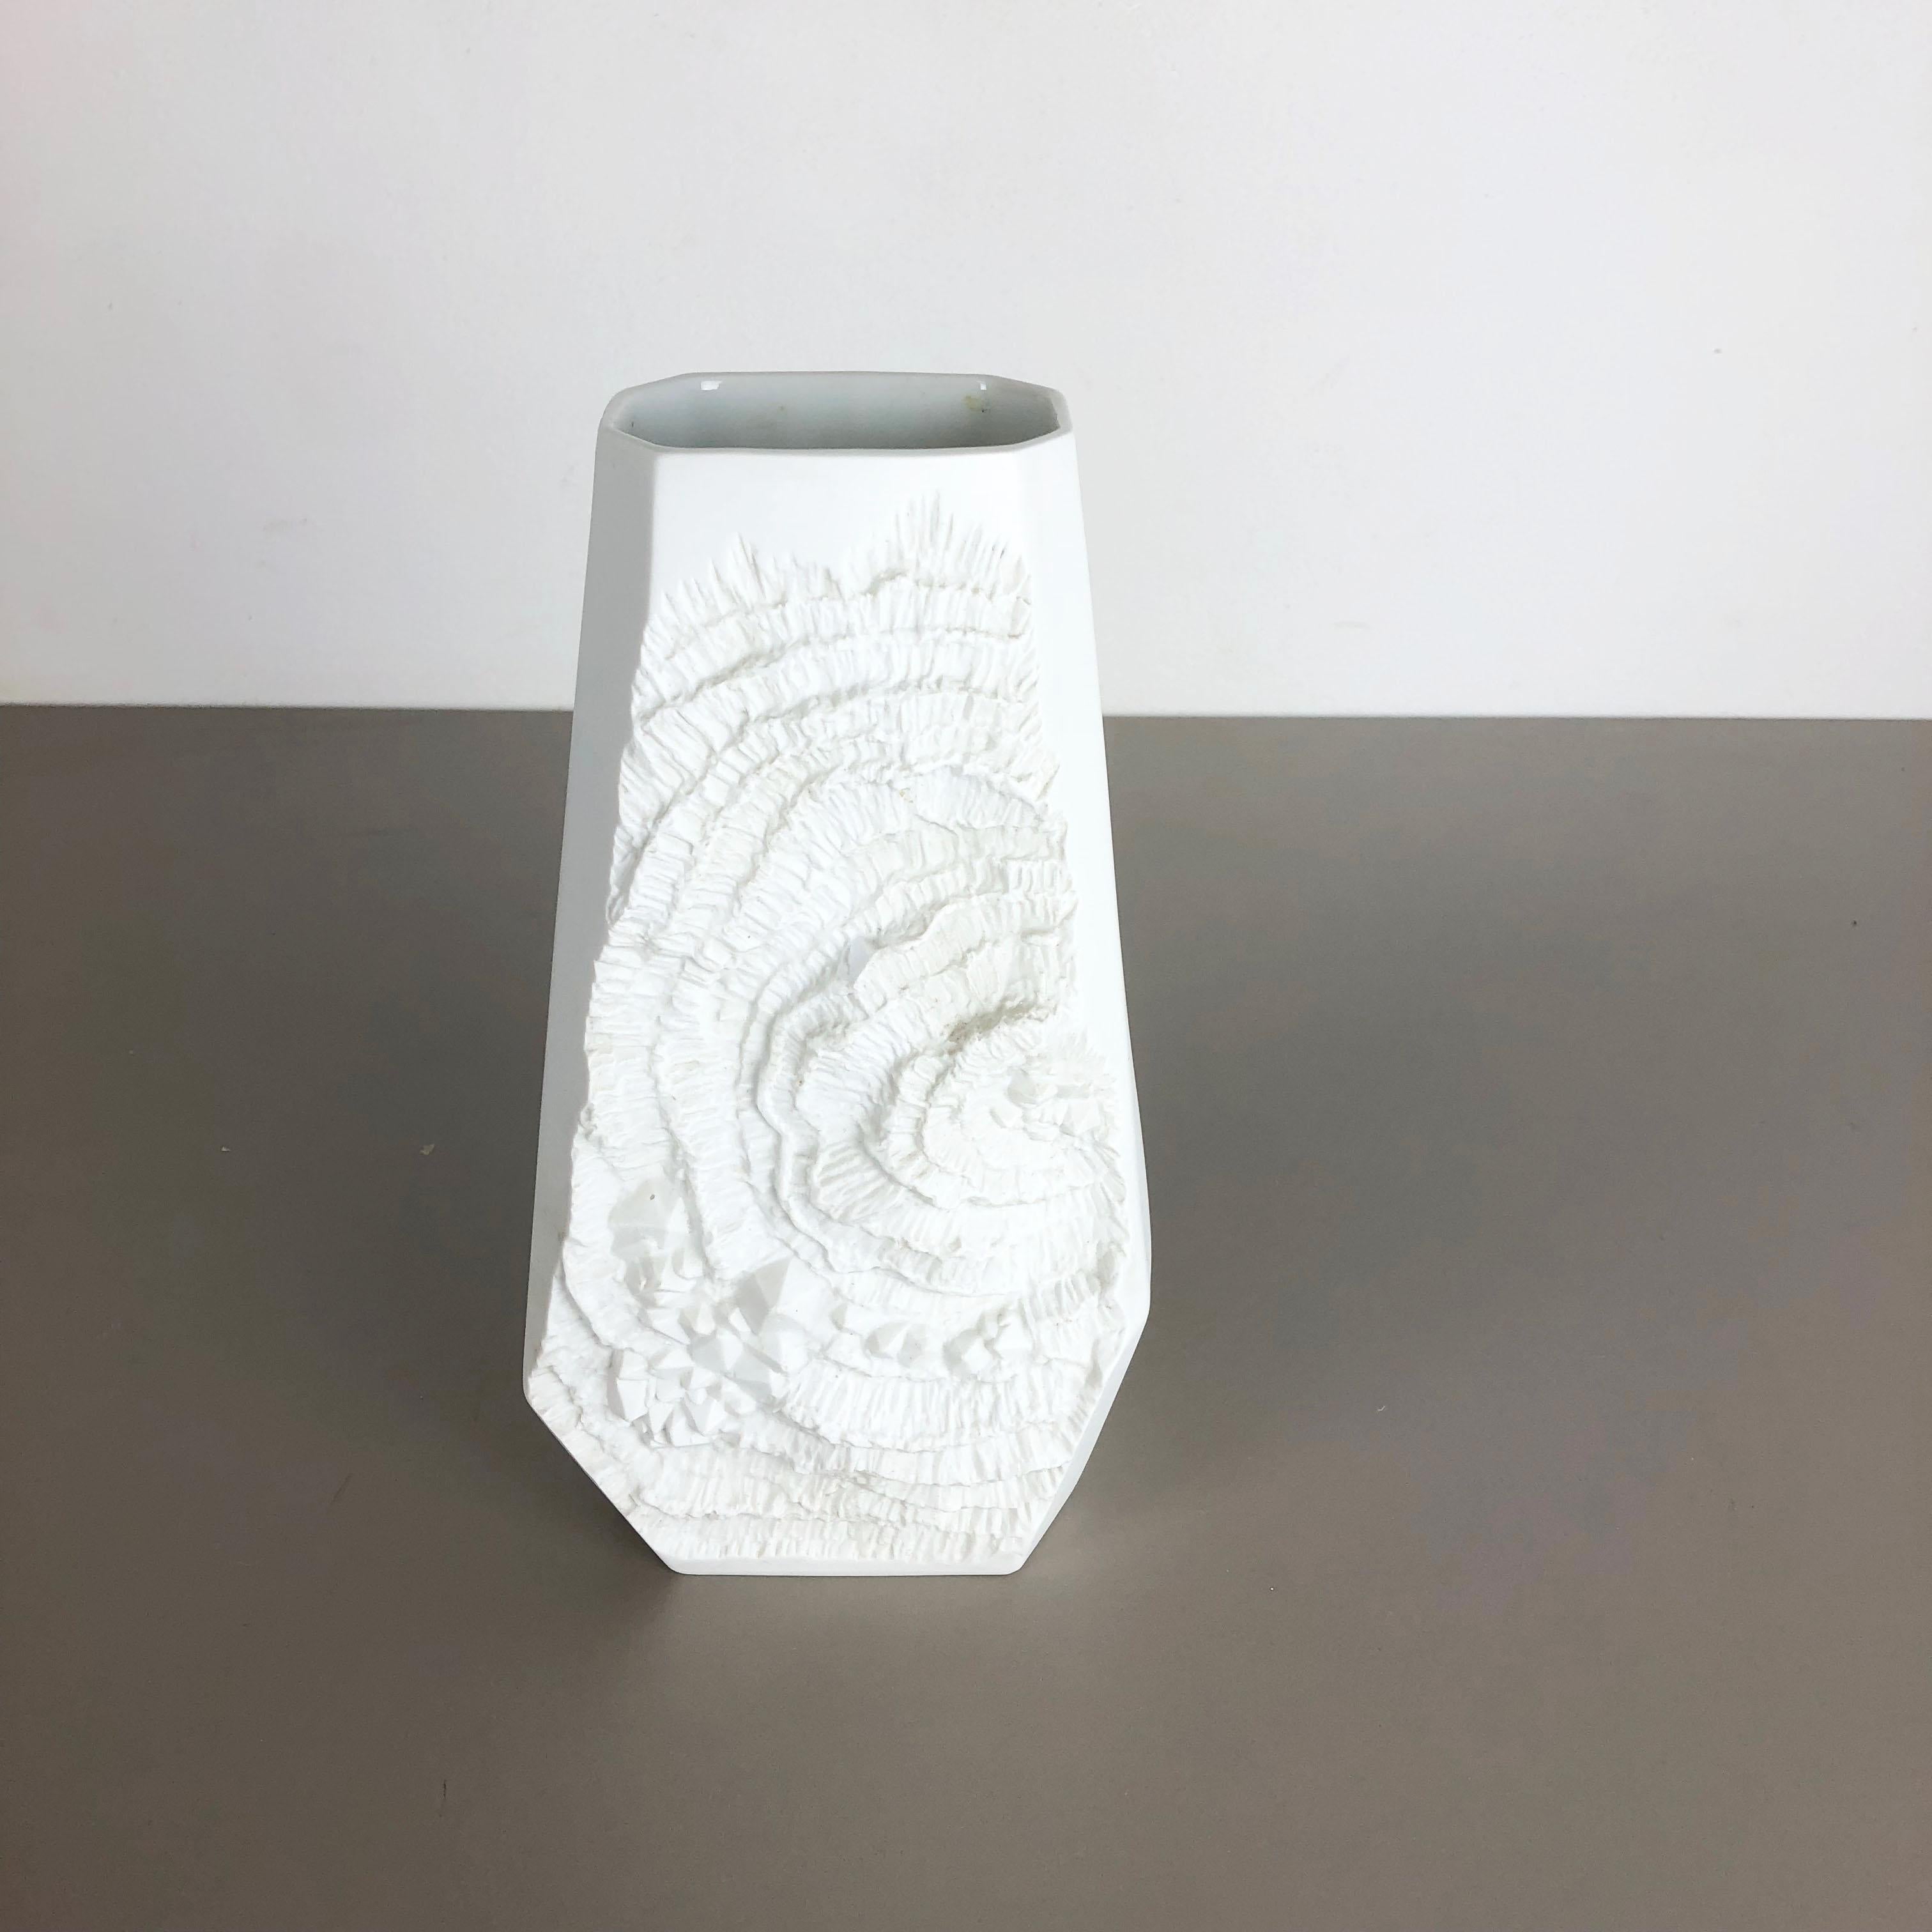 Article :

Vase en porcelaine Op Art


Producteur :

AK Kaiser, Allemagne


Description :

Ce vase OP Art vintage original a été produit dans les années 1970 en Allemagne. Il est en porcelaine avec une surface optique OP Art rock. Le